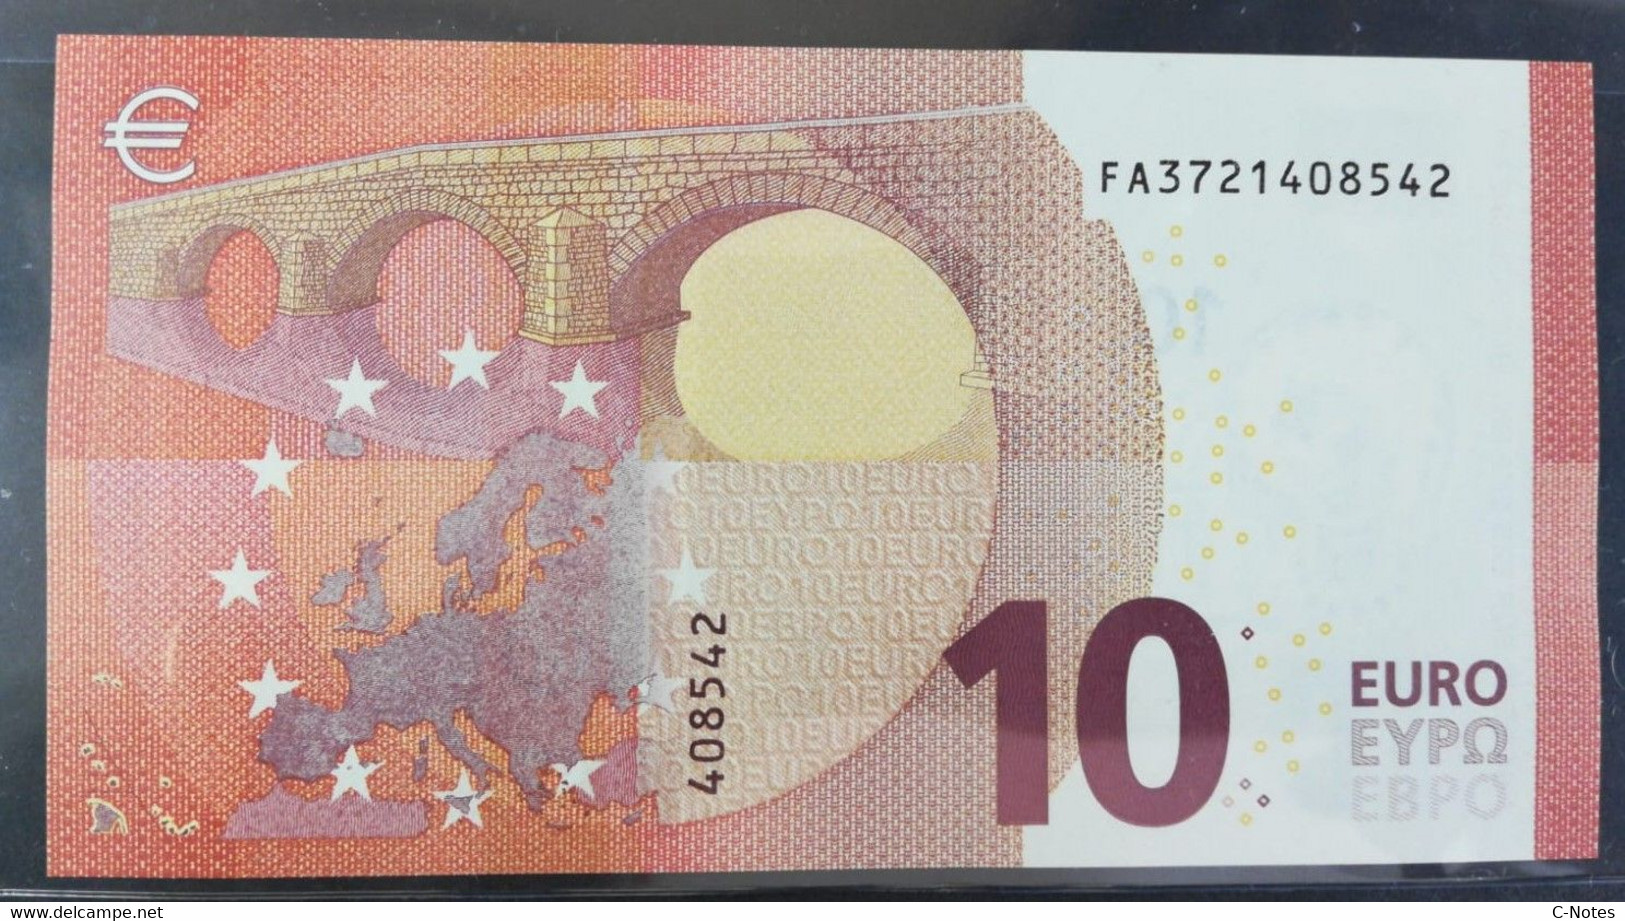 EUROPEAN CENTRAL BANK - BULGARIA (FA) F004I2 - P.21F – 10 EURO 2014 UNC / Signature Draghi - 10 Euro